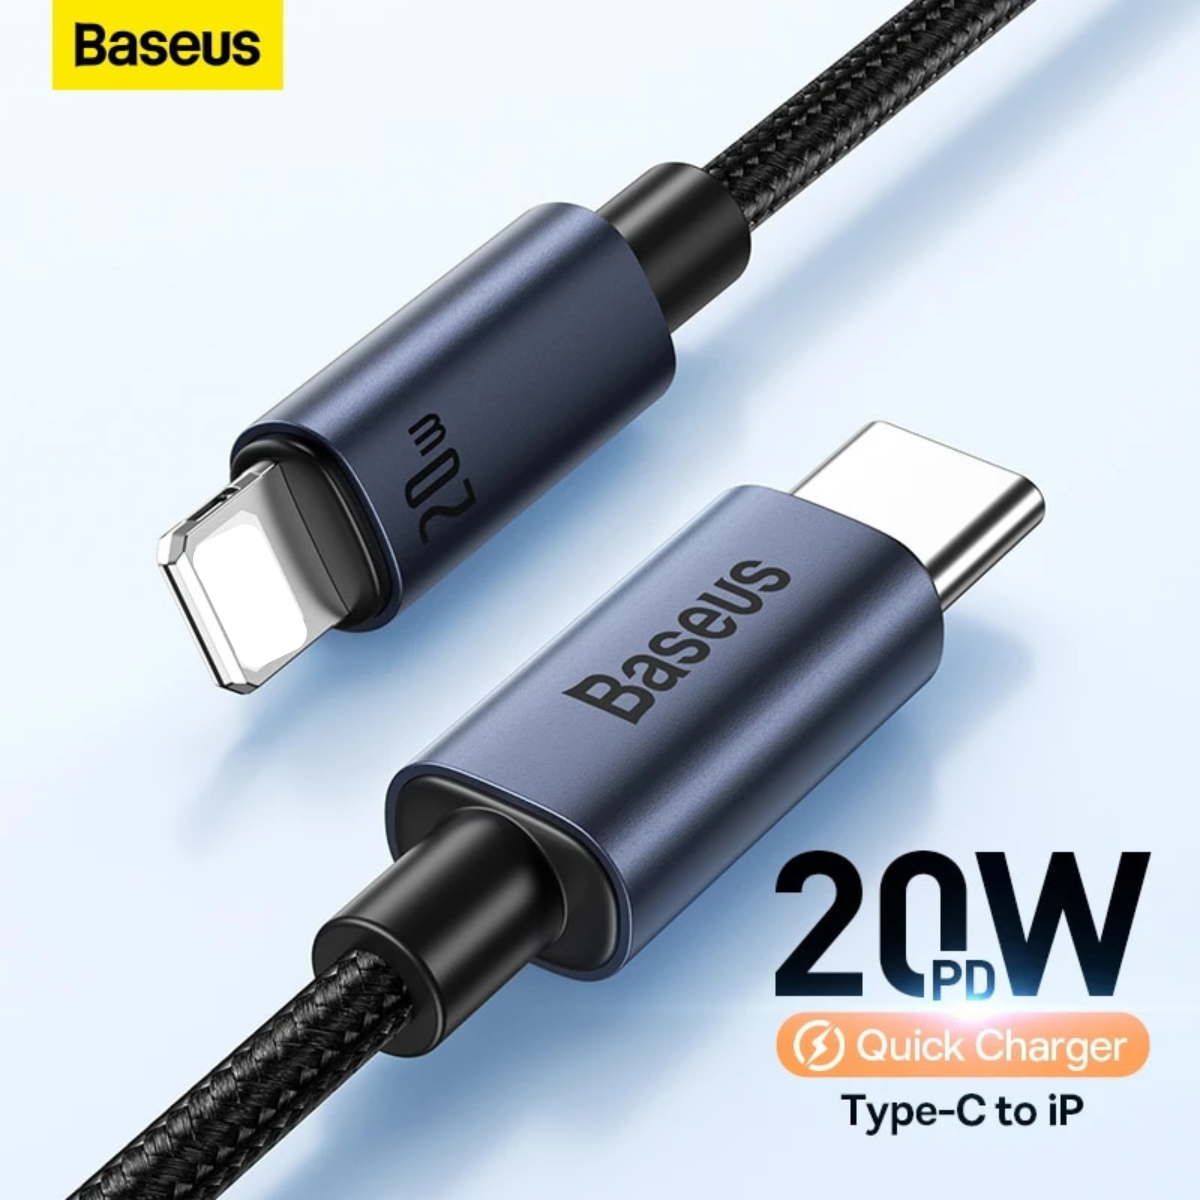 Cáp sạc nhanh Baseus Minimalist Series Fast Charging Data Cable Type-C to iP 20W CAJY010101- Hàng chính hãng